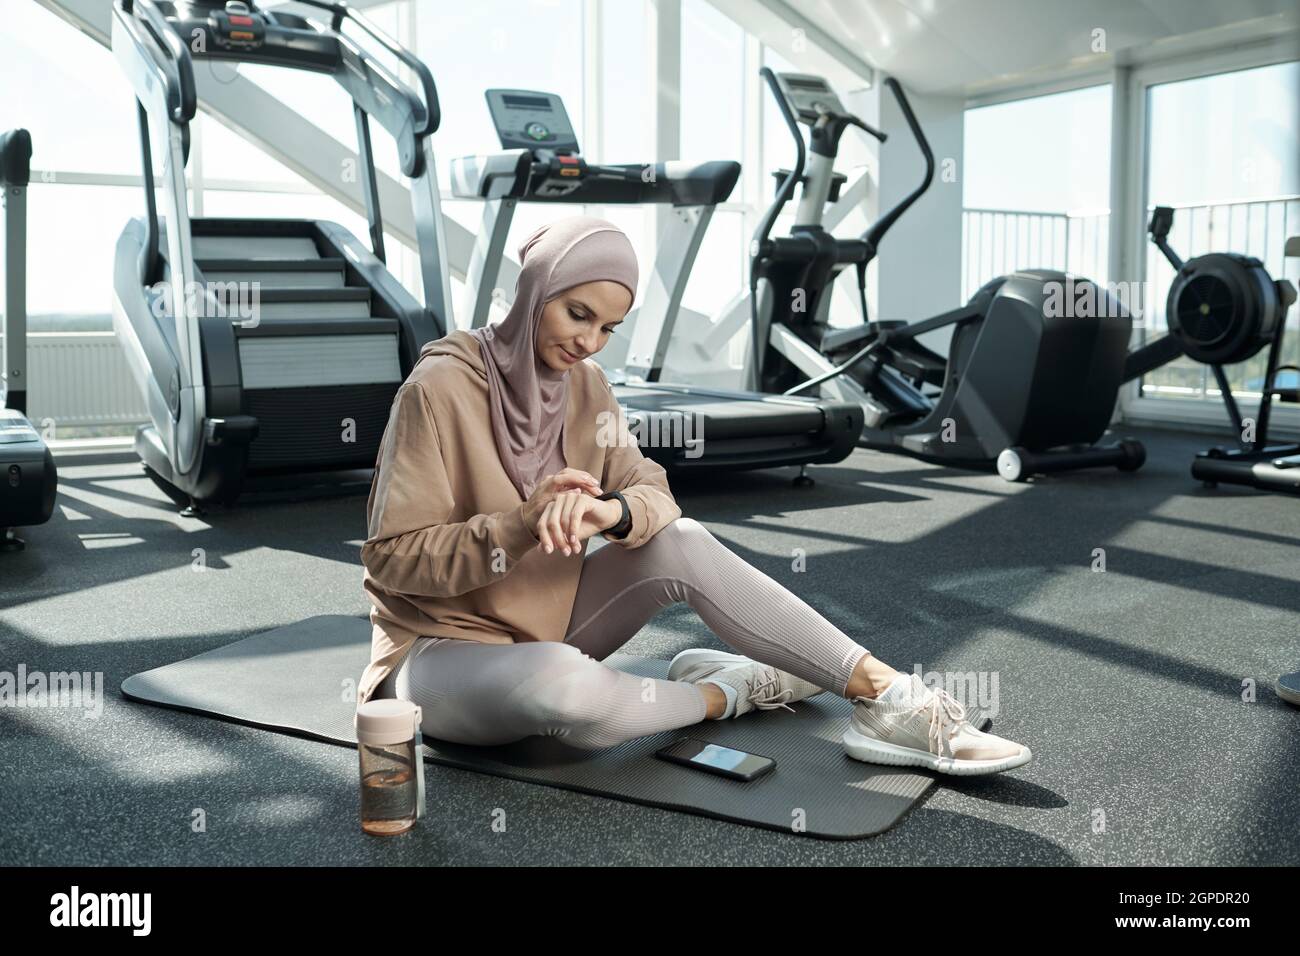 Disparo horizontal de una mujer musulmana moderna con hijab sentado en la colchoneta en el gimnasio que ajusta el dispositivo de seguimiento de actividad durante el tiempo de descanso Foto de stock